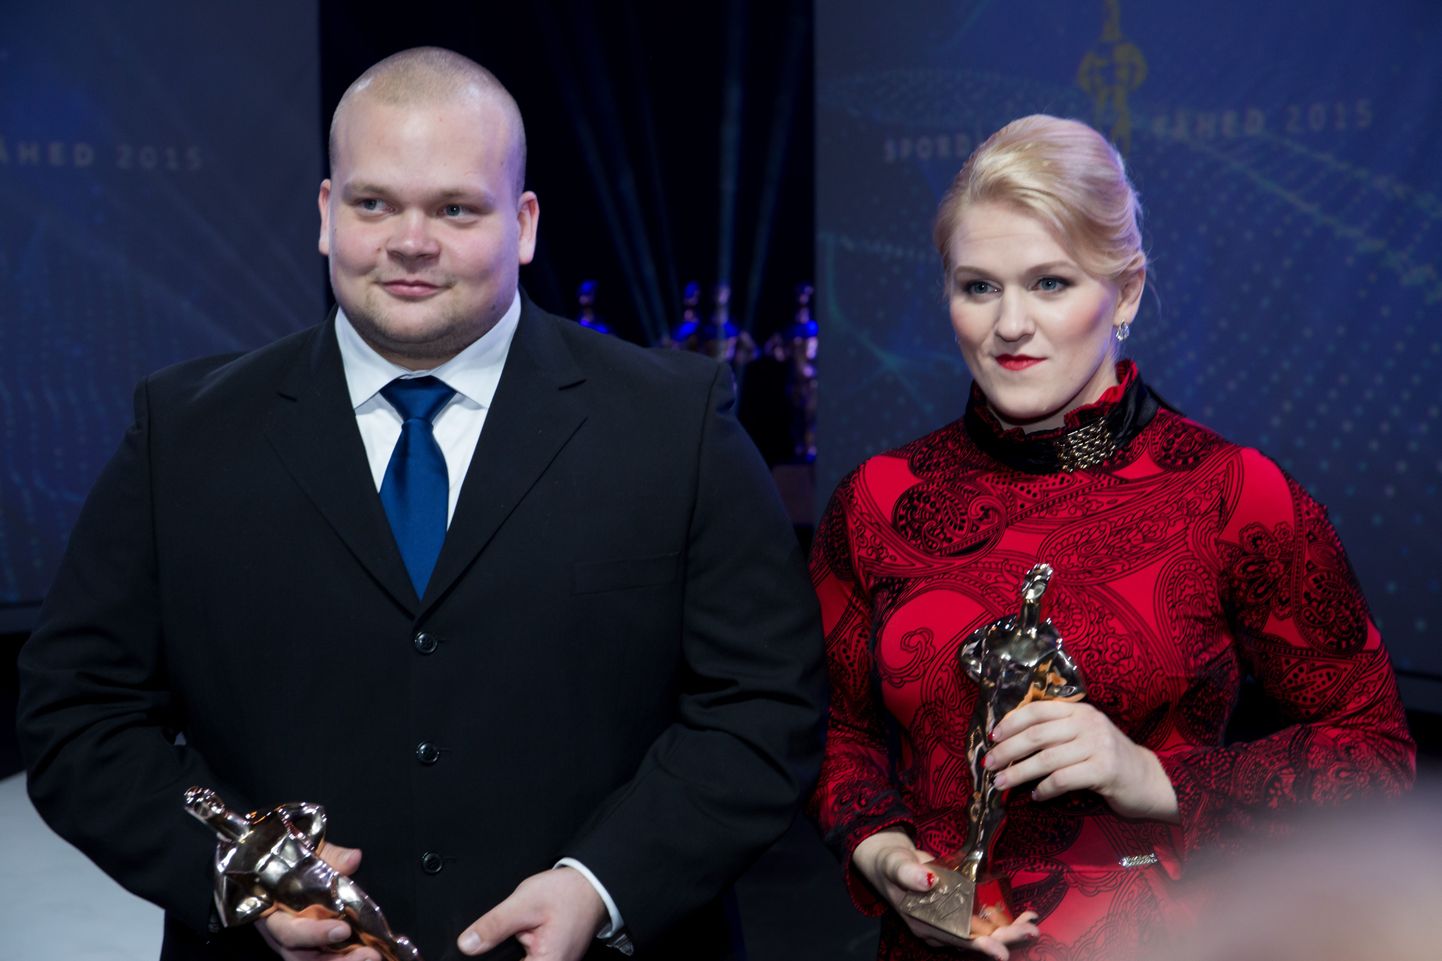 Aasta sporditähed 2015 gala. Mart Seim ja Epp Mäe.